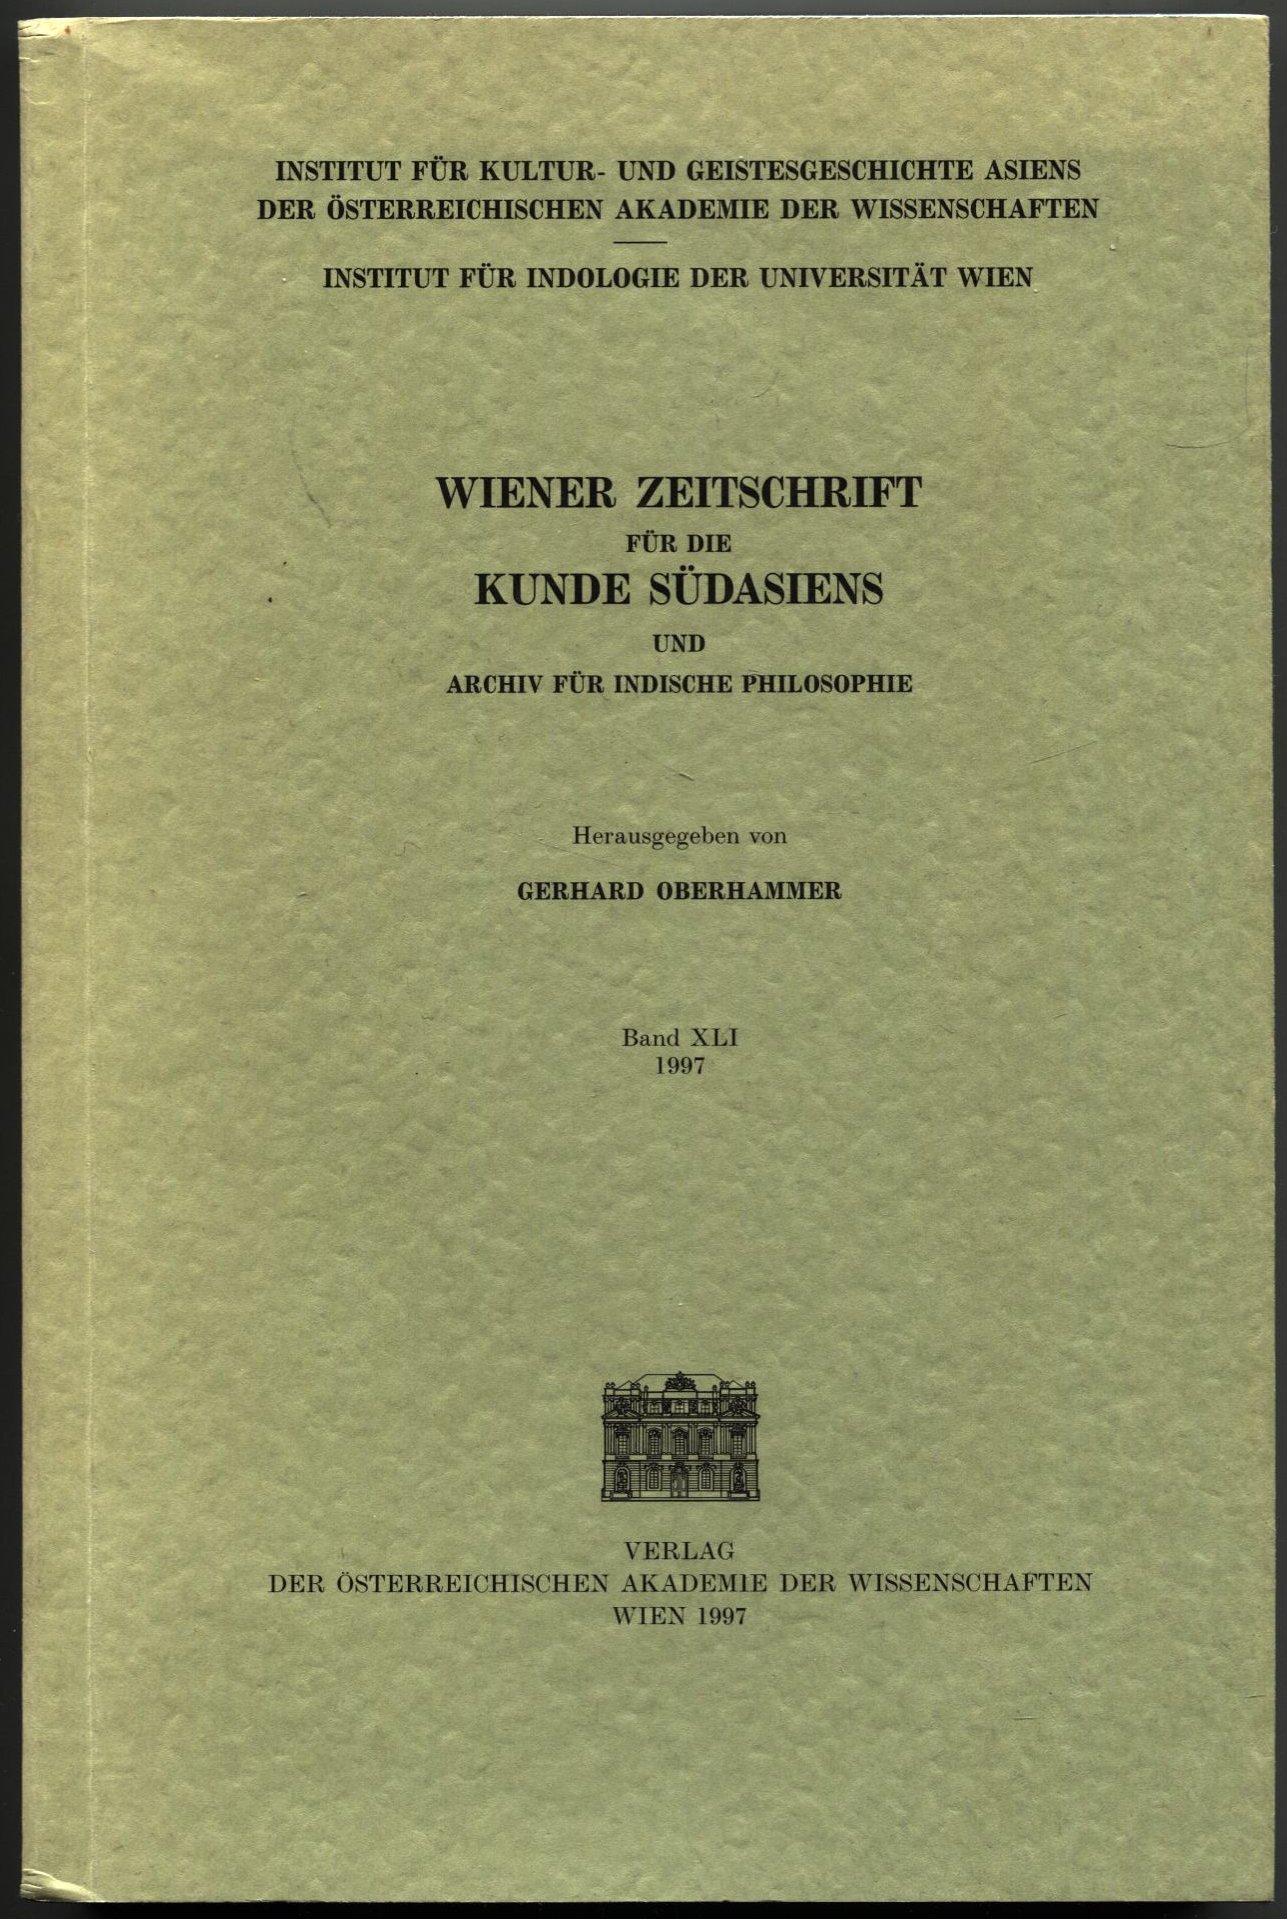 Wiener Zeitschrift für die Kunde Südasiens und Archiv für indische Philosophie. Band XLI, 1997 [Vol. 41] - Oberhammer, Gerhard - Werba, Chlodwig H. (ed.)